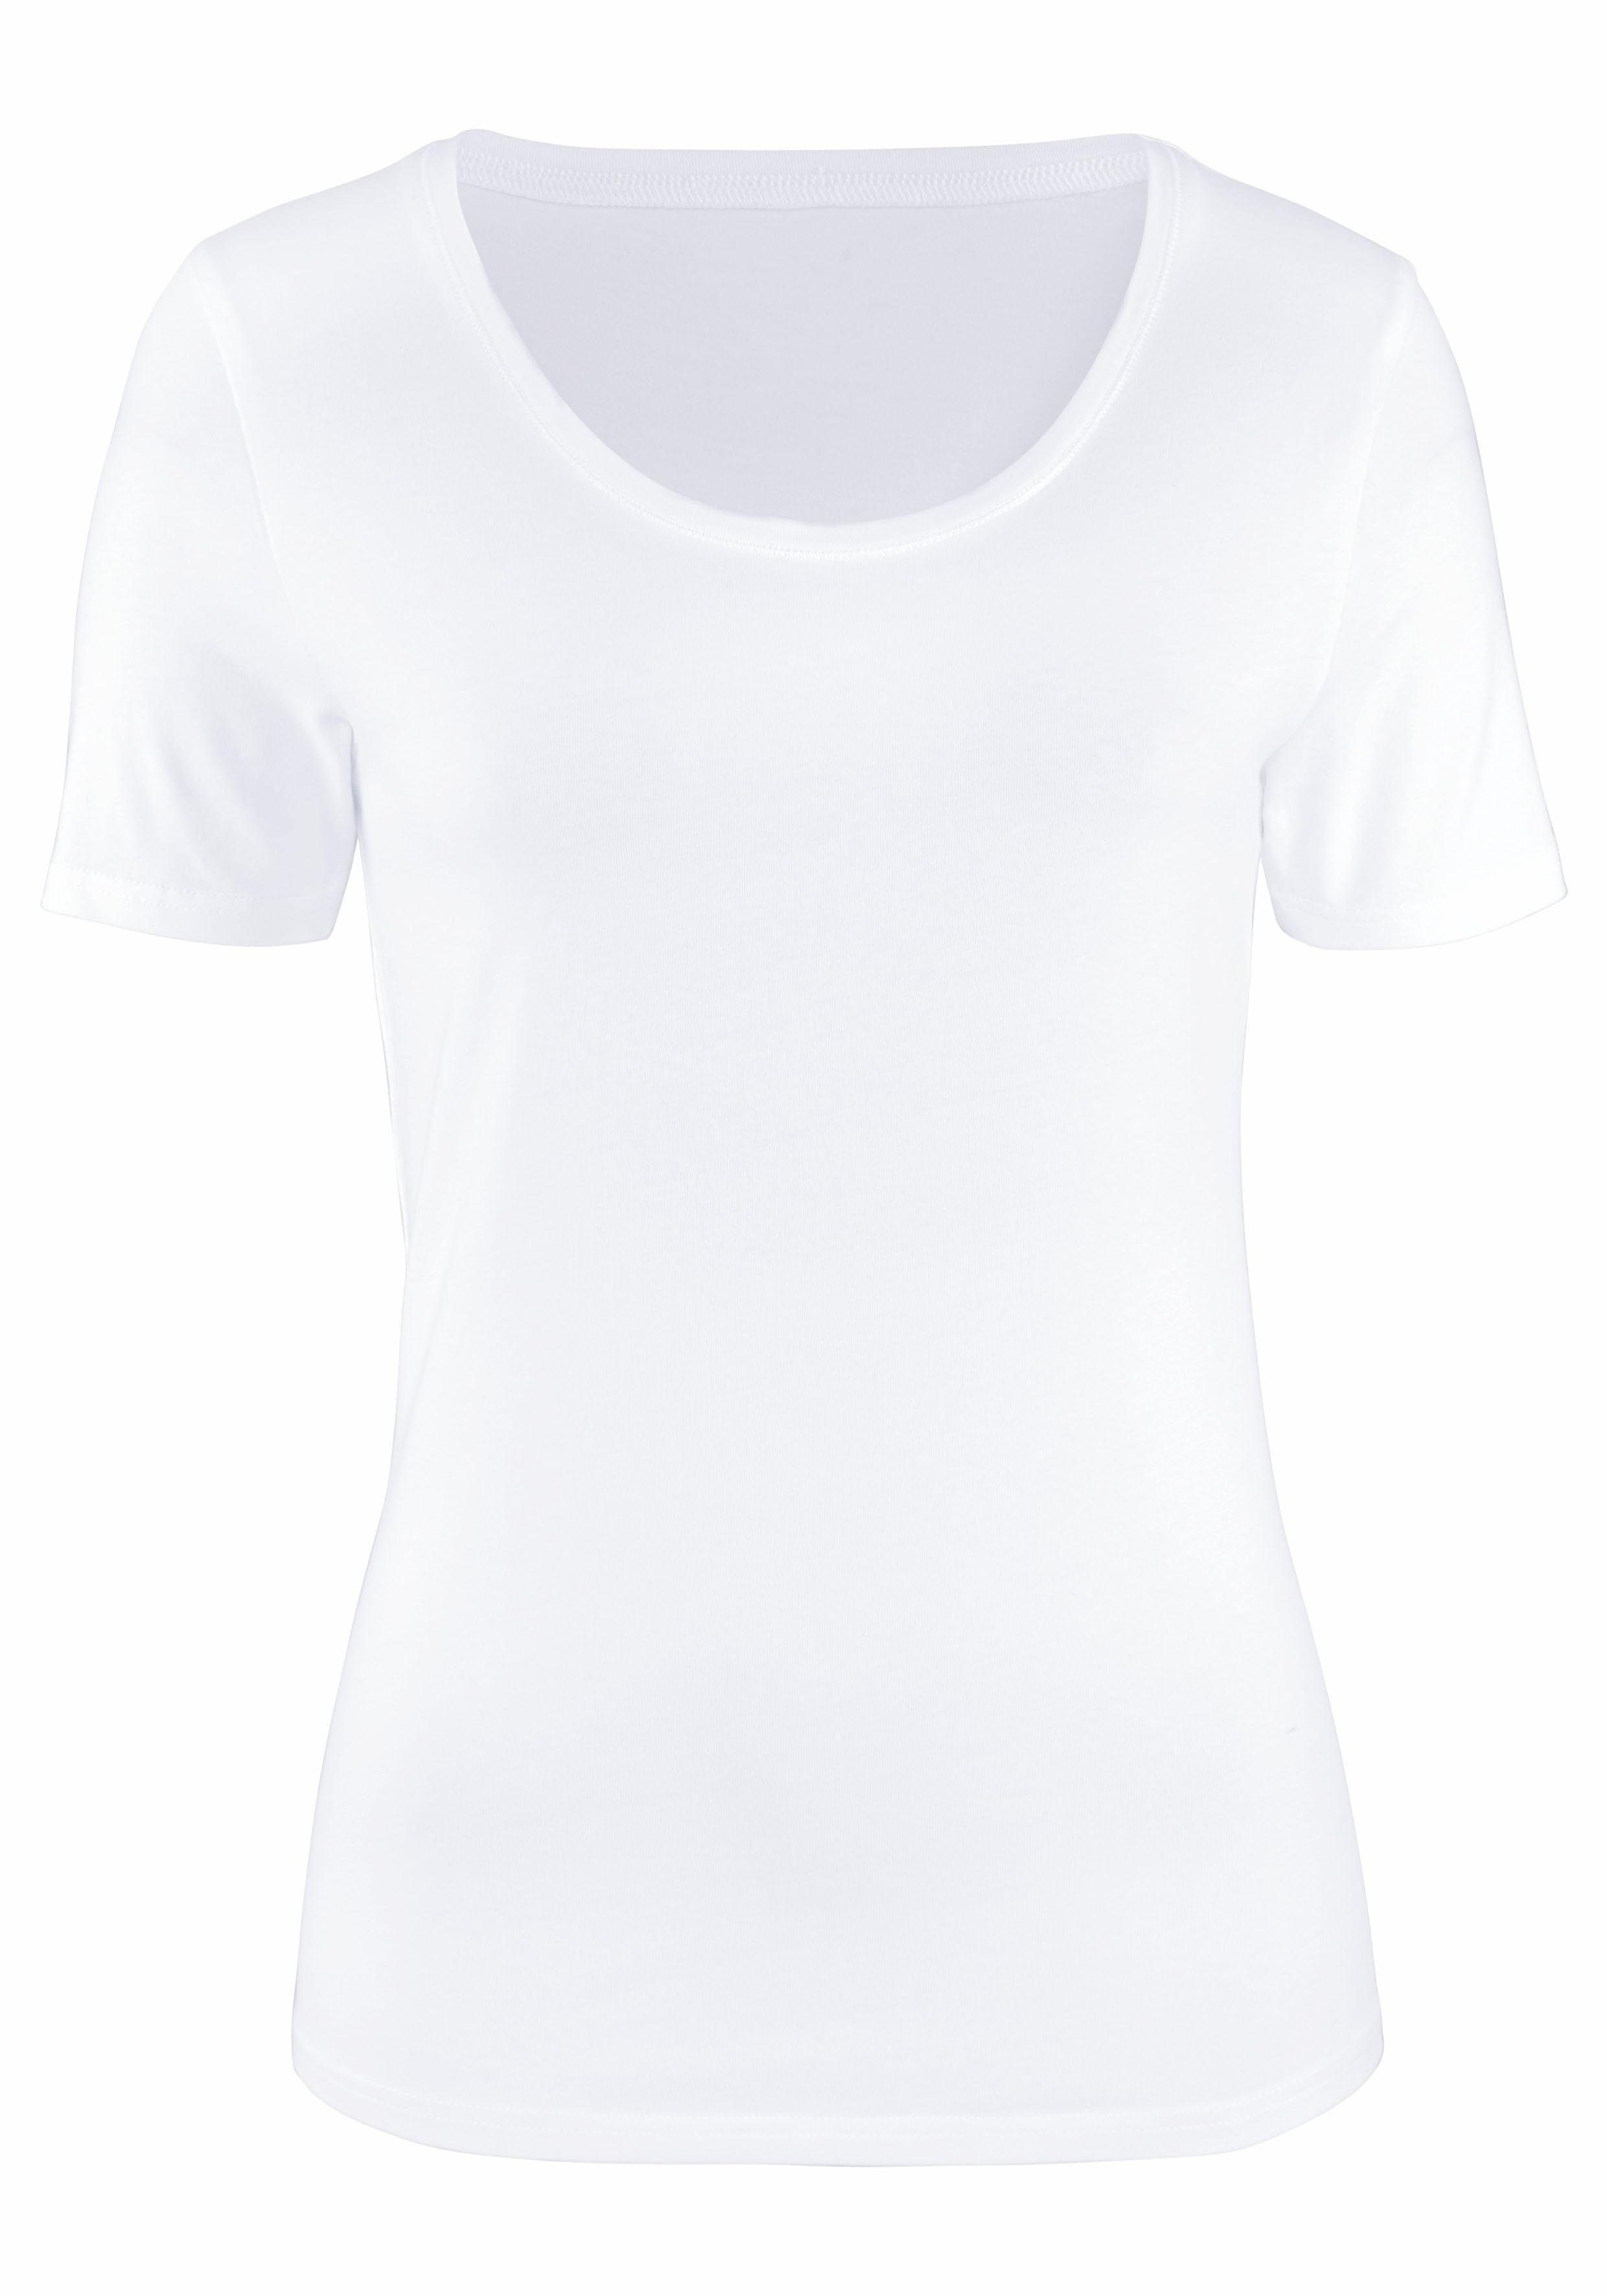 Kurzarmshirt Vivance elastischer weiß (2er-Pack) Baumwoll-Qualität aus